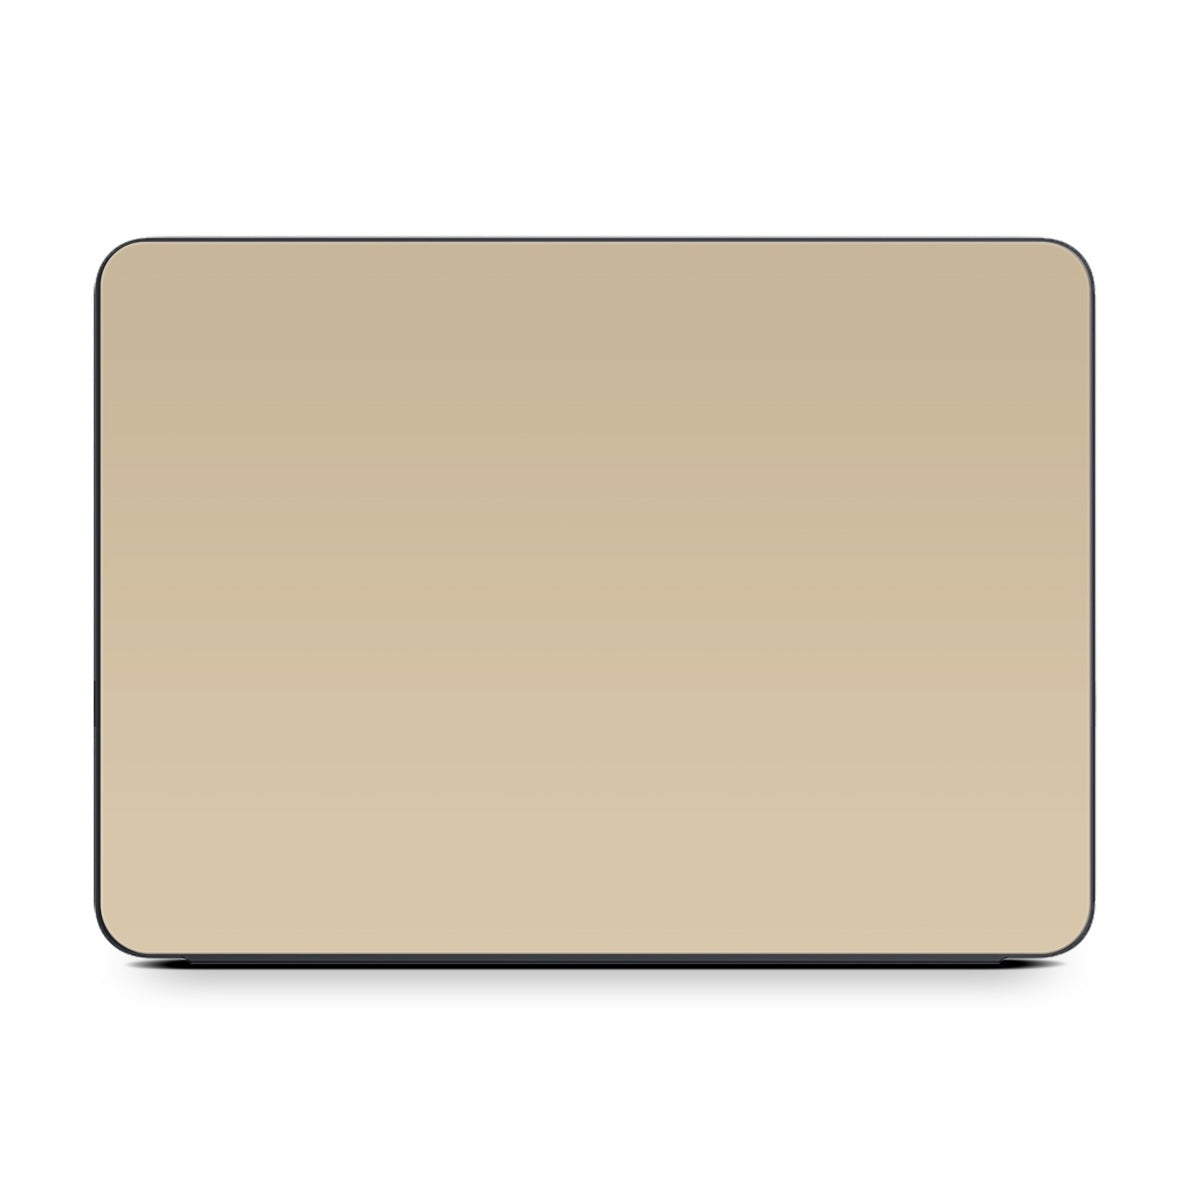 Solid State Beige - Apple Smart Keyboard Folio Skin